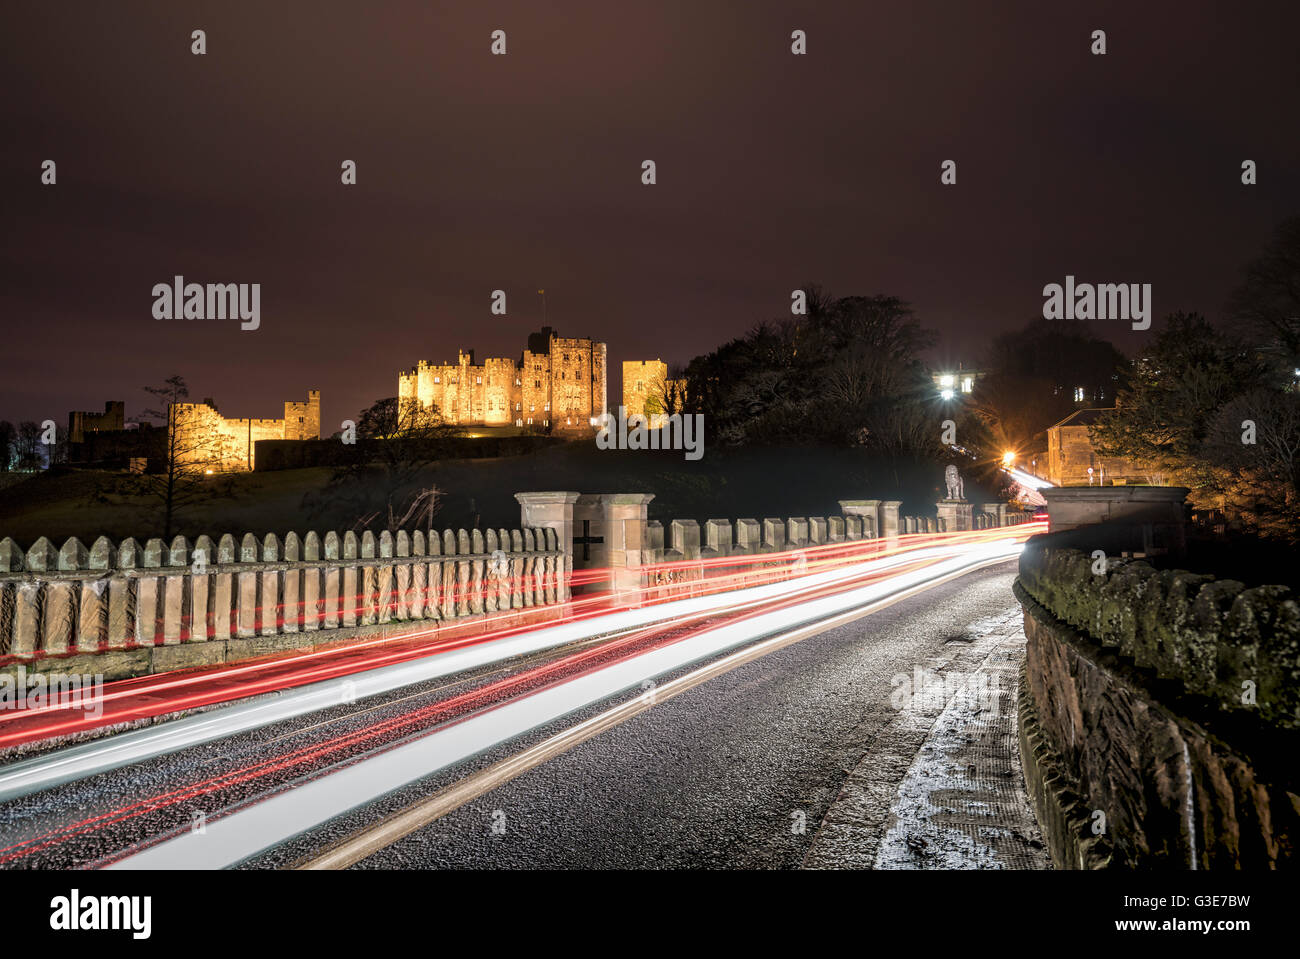 Des sentiers de lumière sur une route et bâtiment en arrière-plan éclairé à la nuit ; Alnwick, Northumberland, Angleterre Banque D'Images